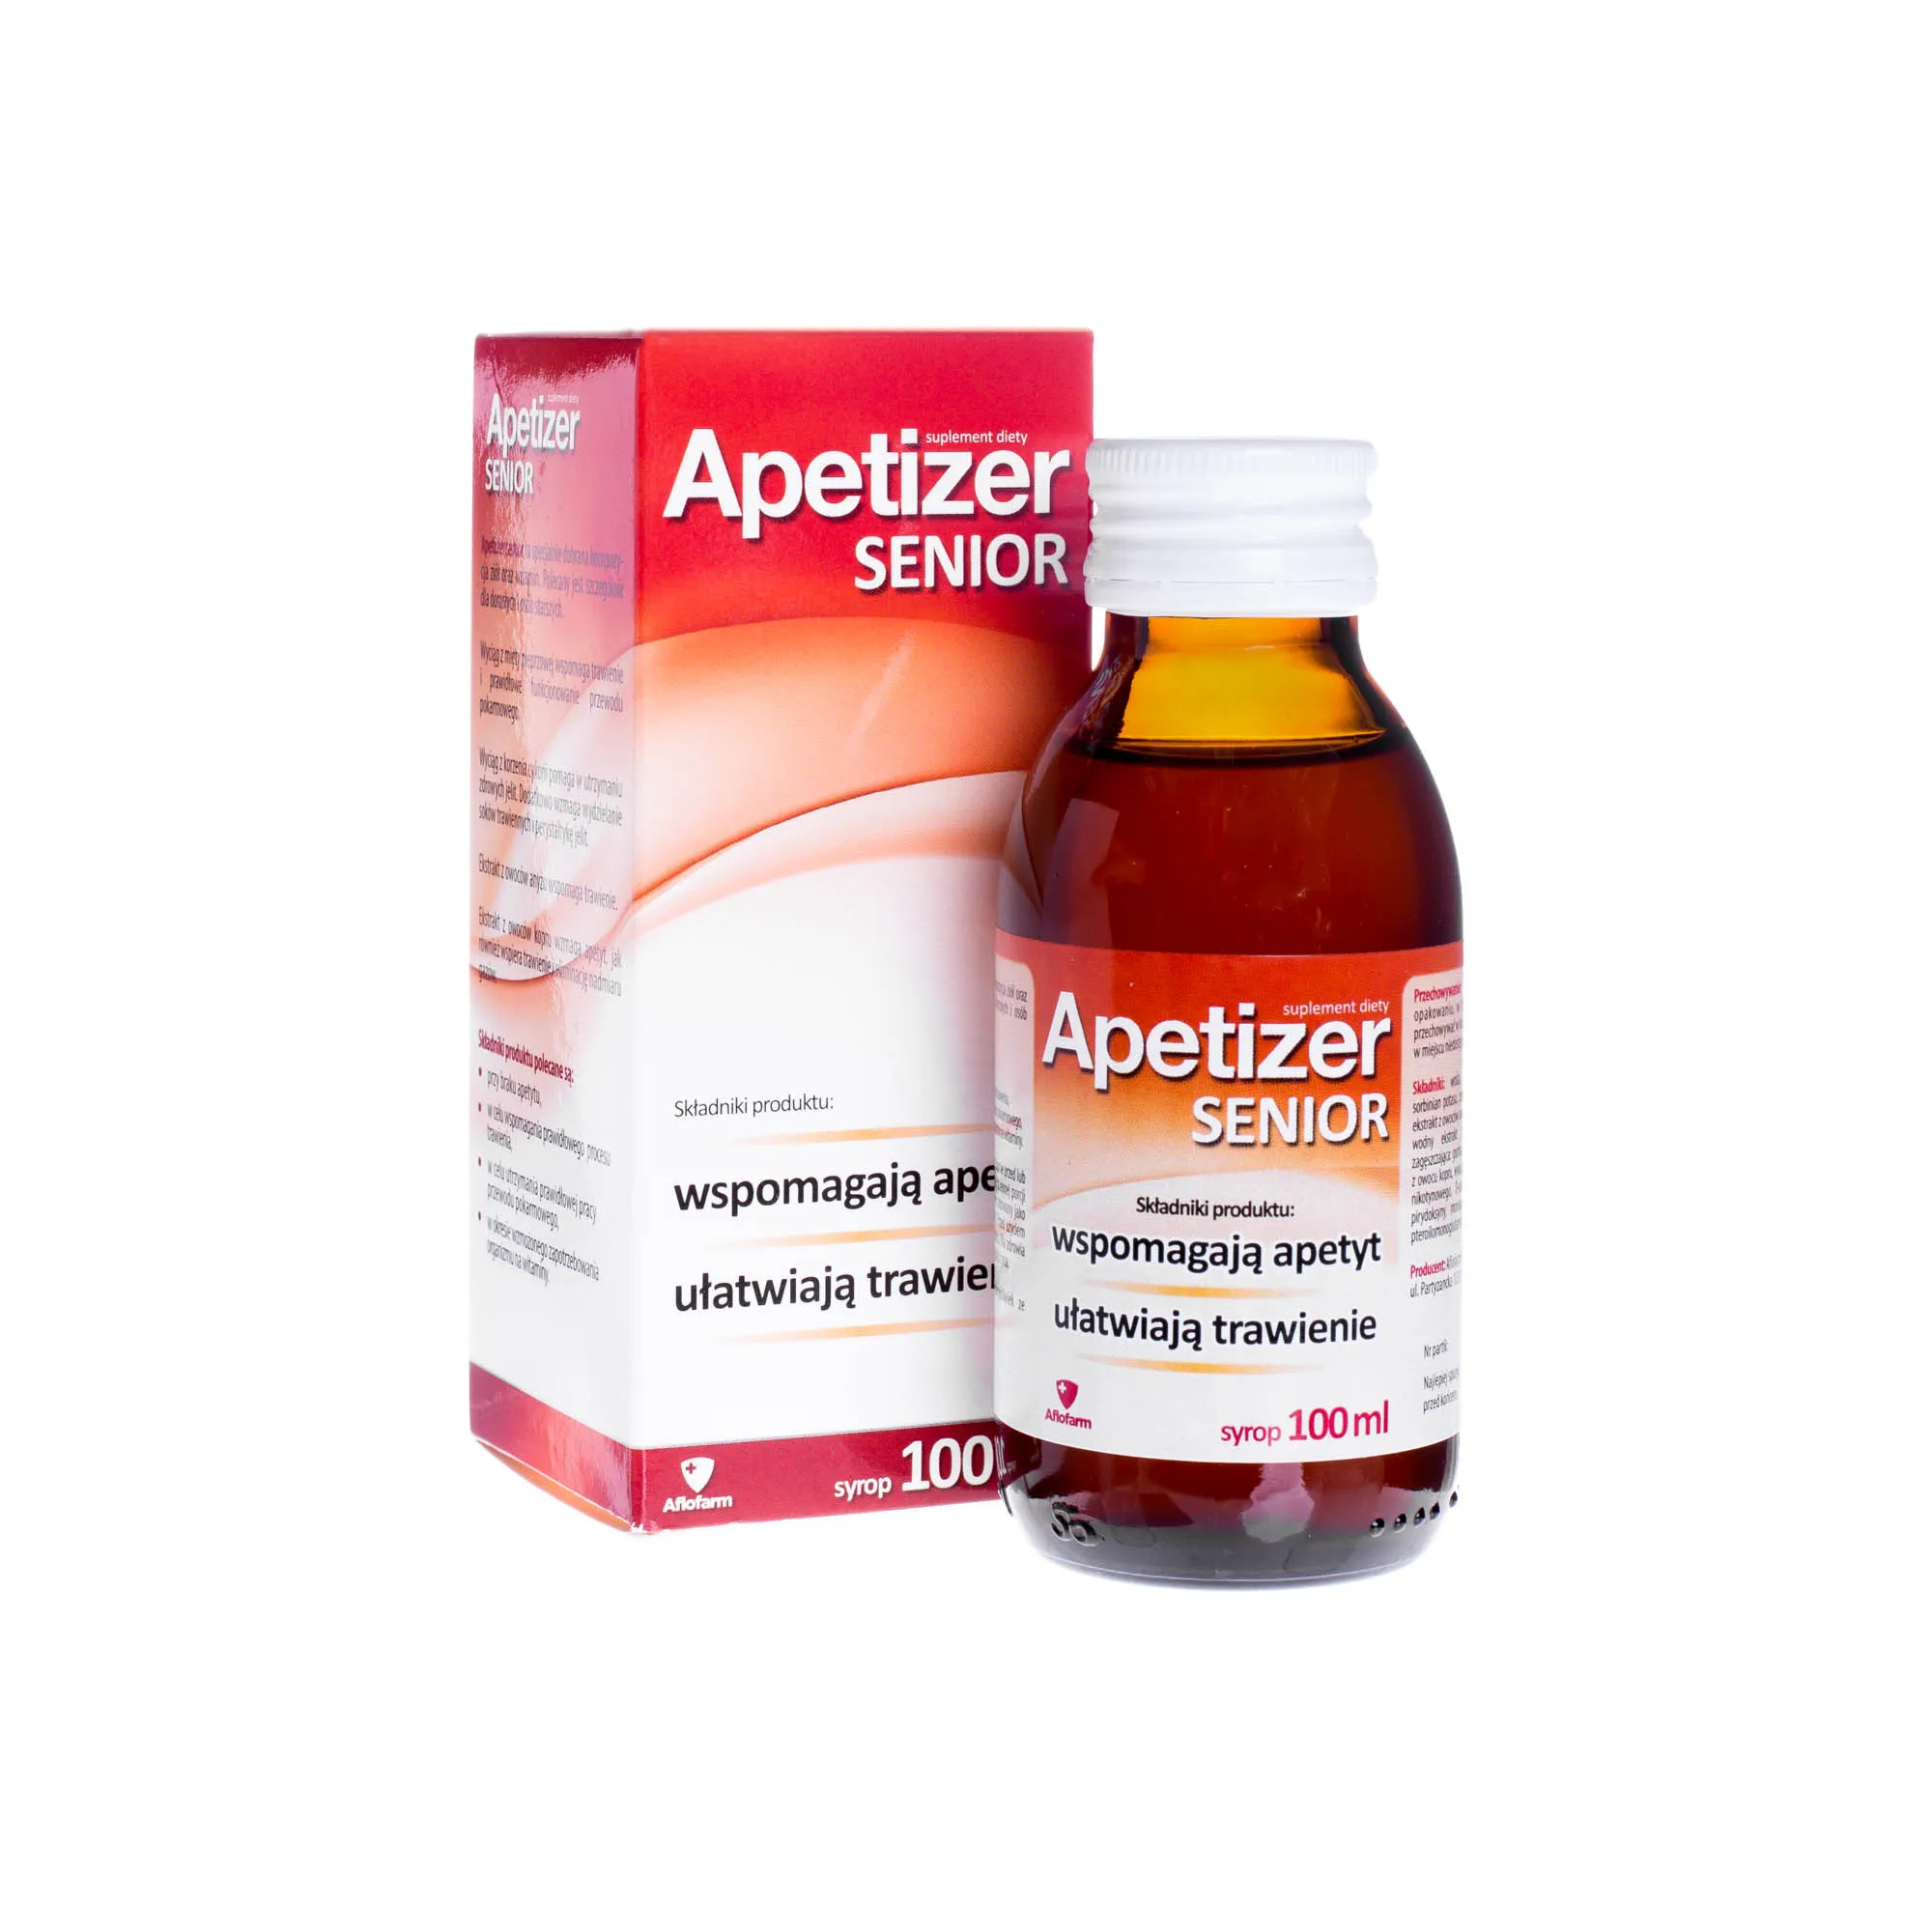 Apetizer Senior suplement diety, 100 ml